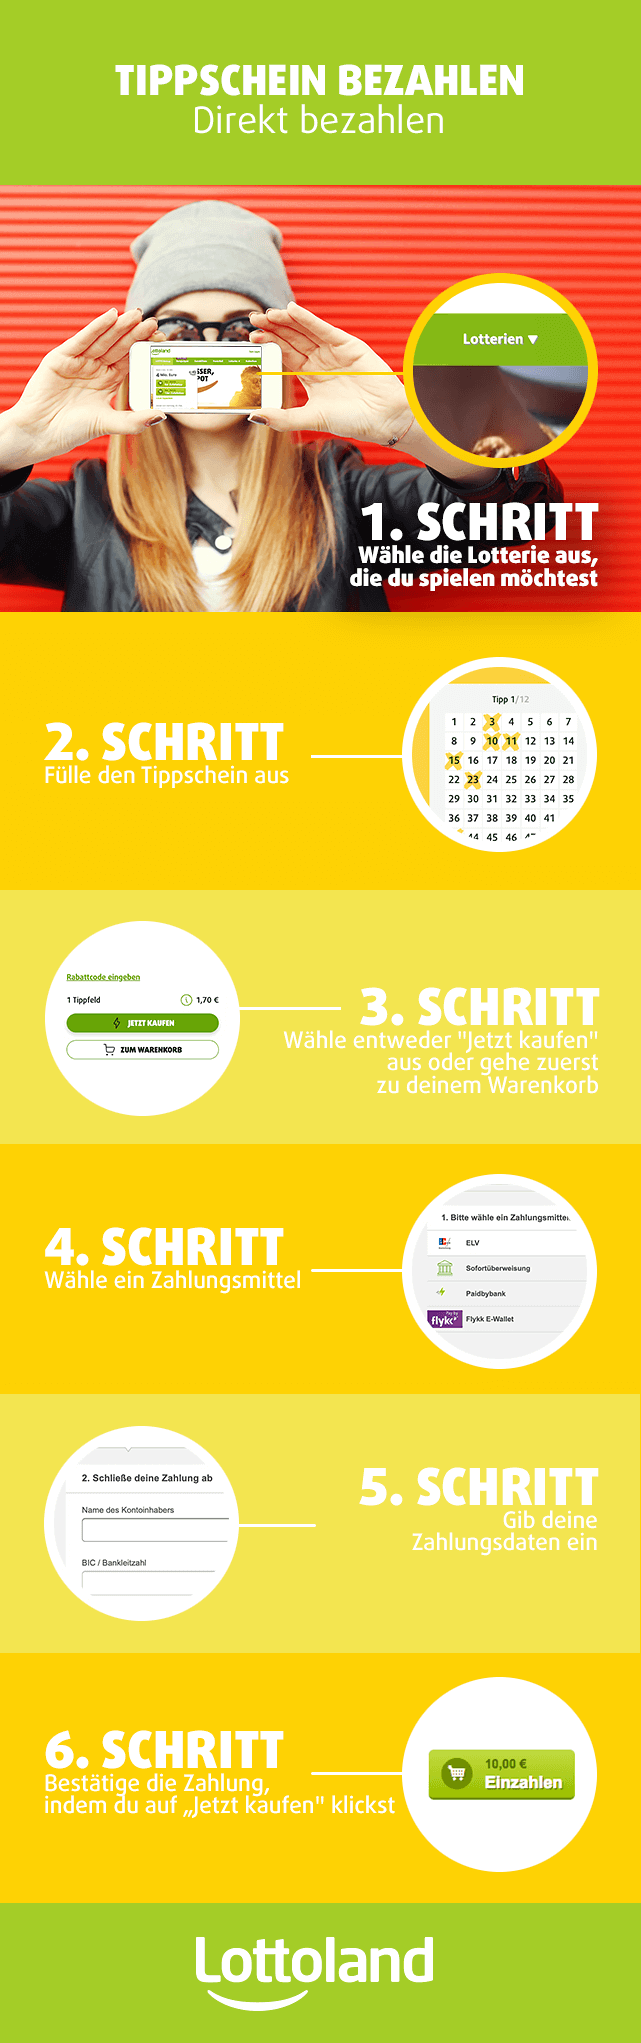 Infografik Tippschein bezahlen Lottoland Deutschland